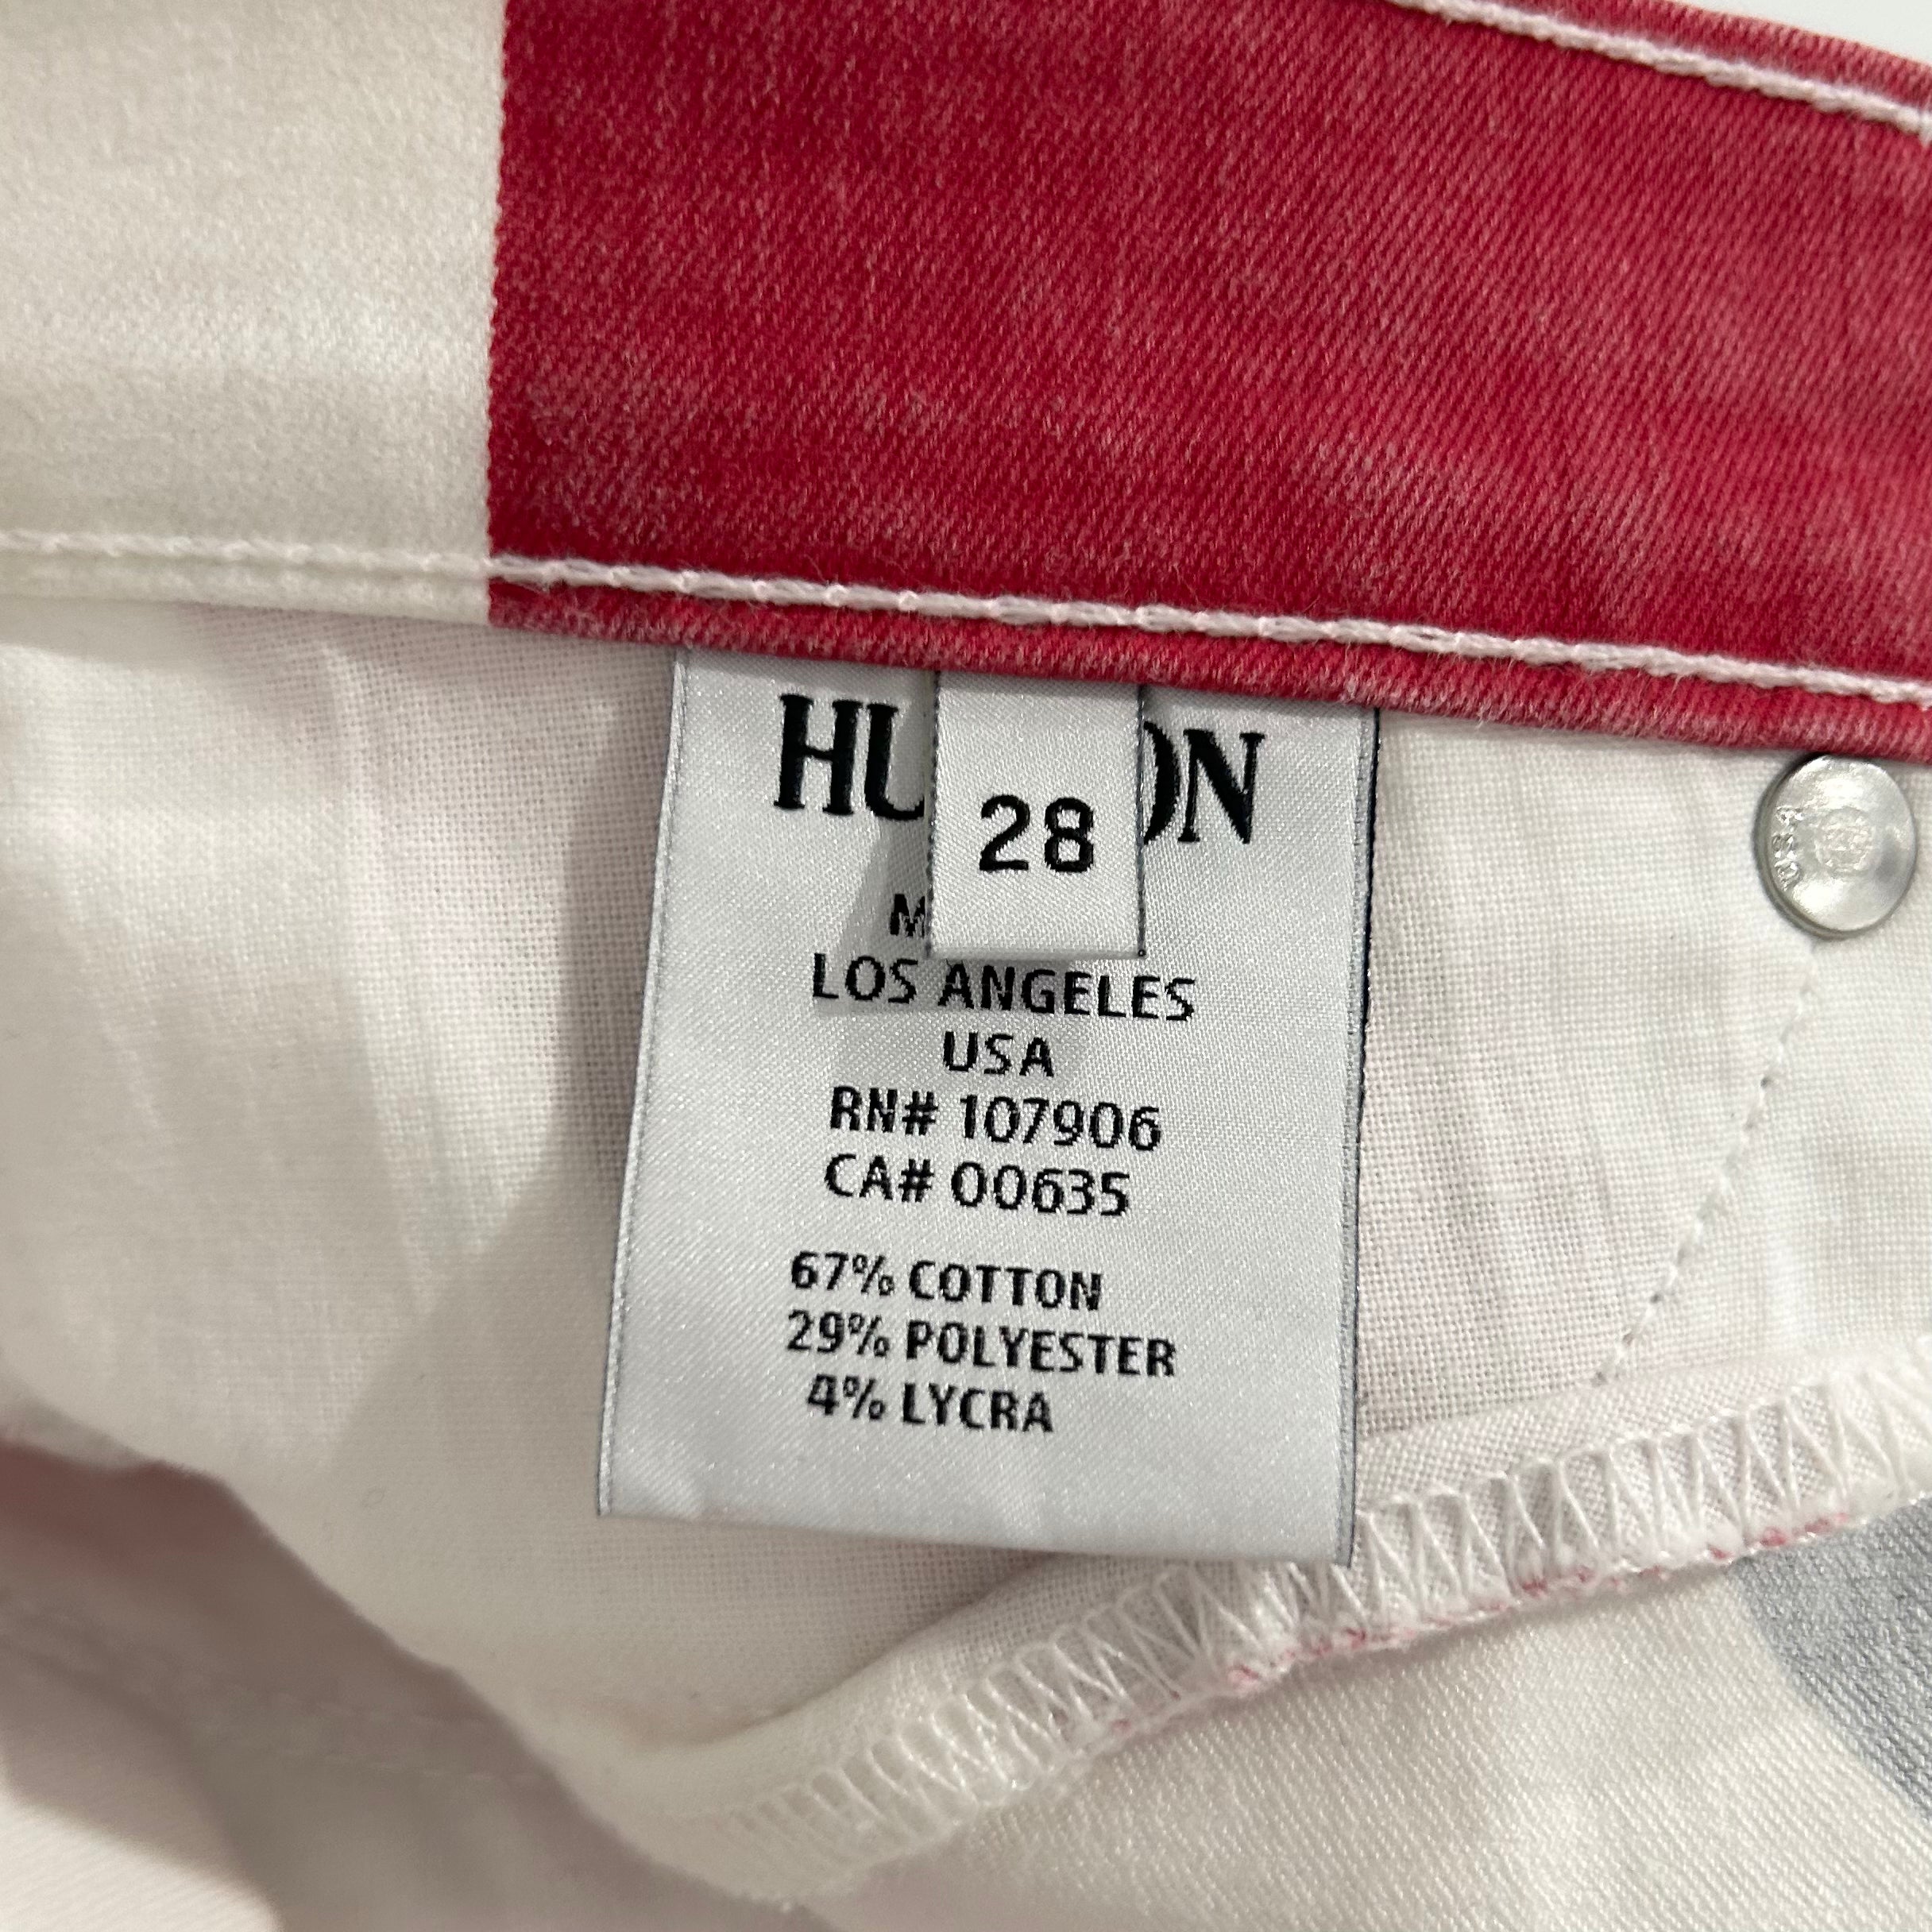 Hudson Union Jack Jeans